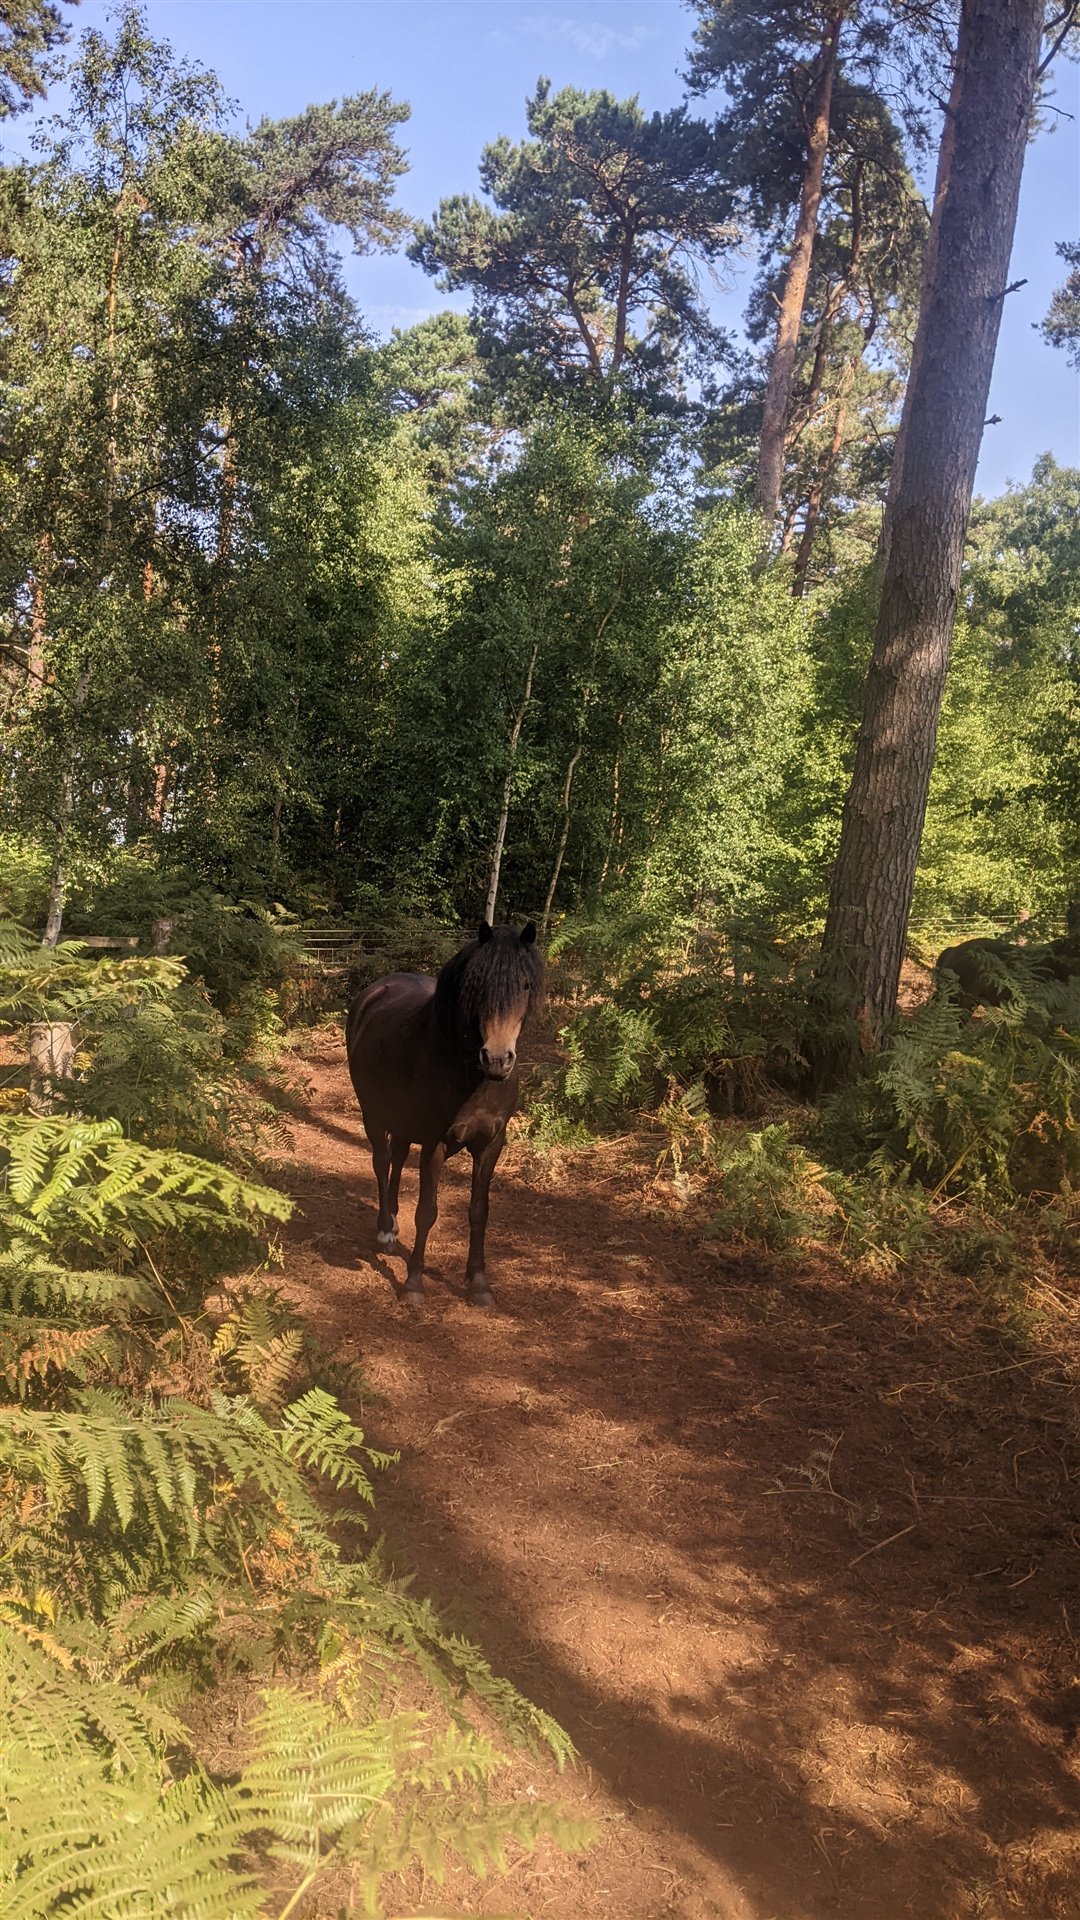 A pony amongst the woodland shade